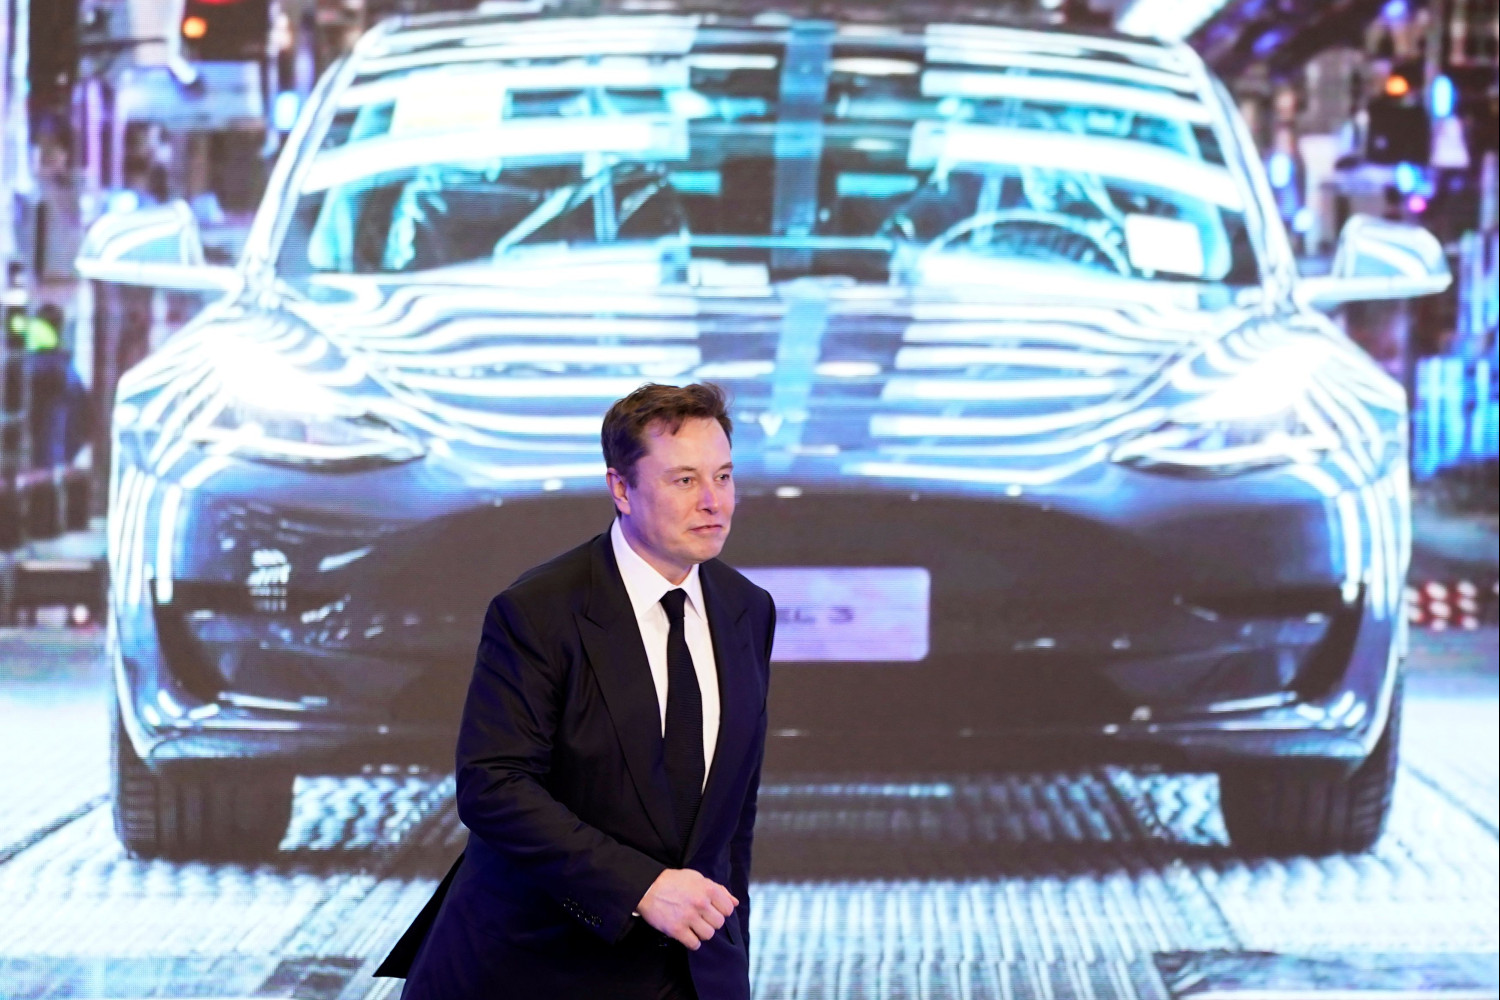 Tesla sube con fuerza después de que China haya eliminado restricciones a sus coches